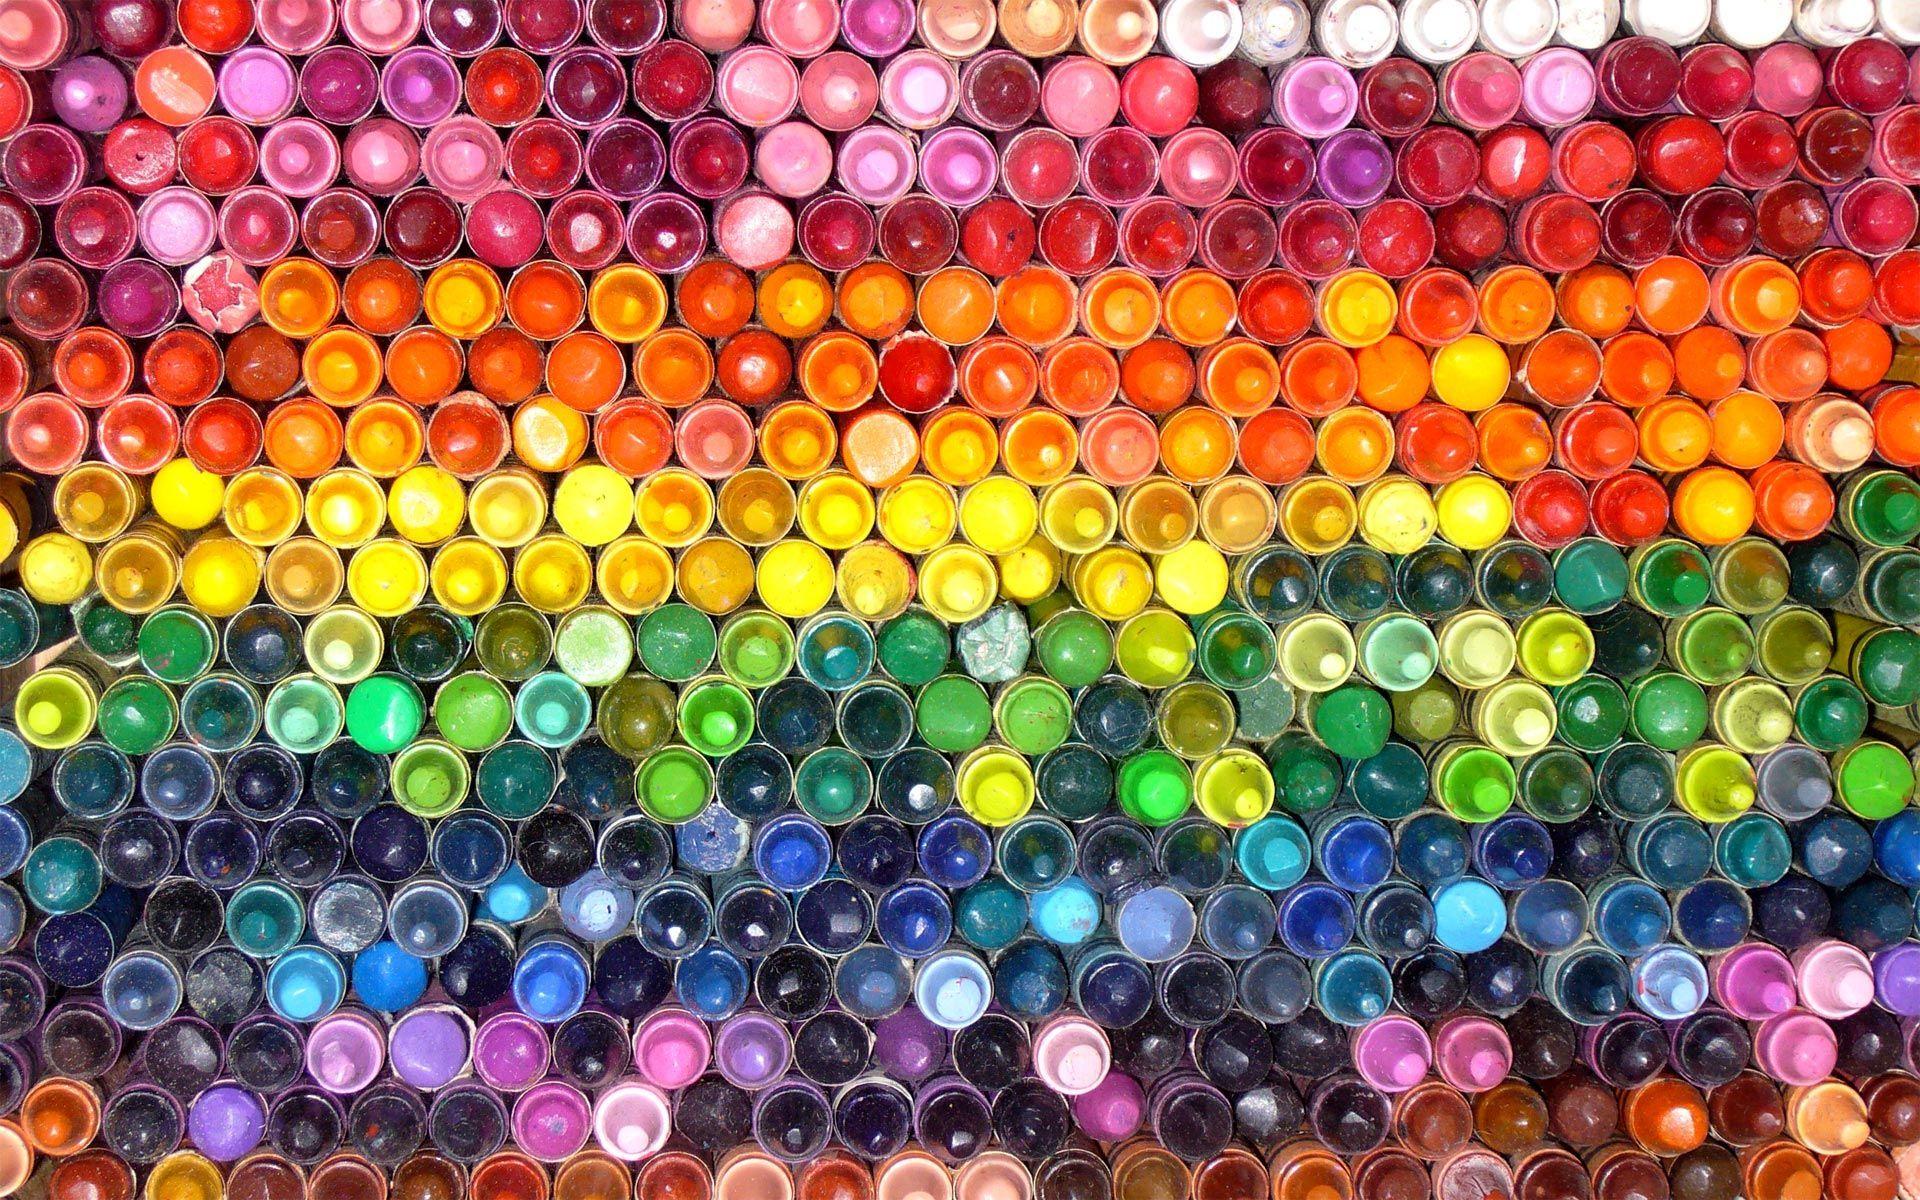 Rock on Crayola- Bing. Color. Crayons, Colored pencils